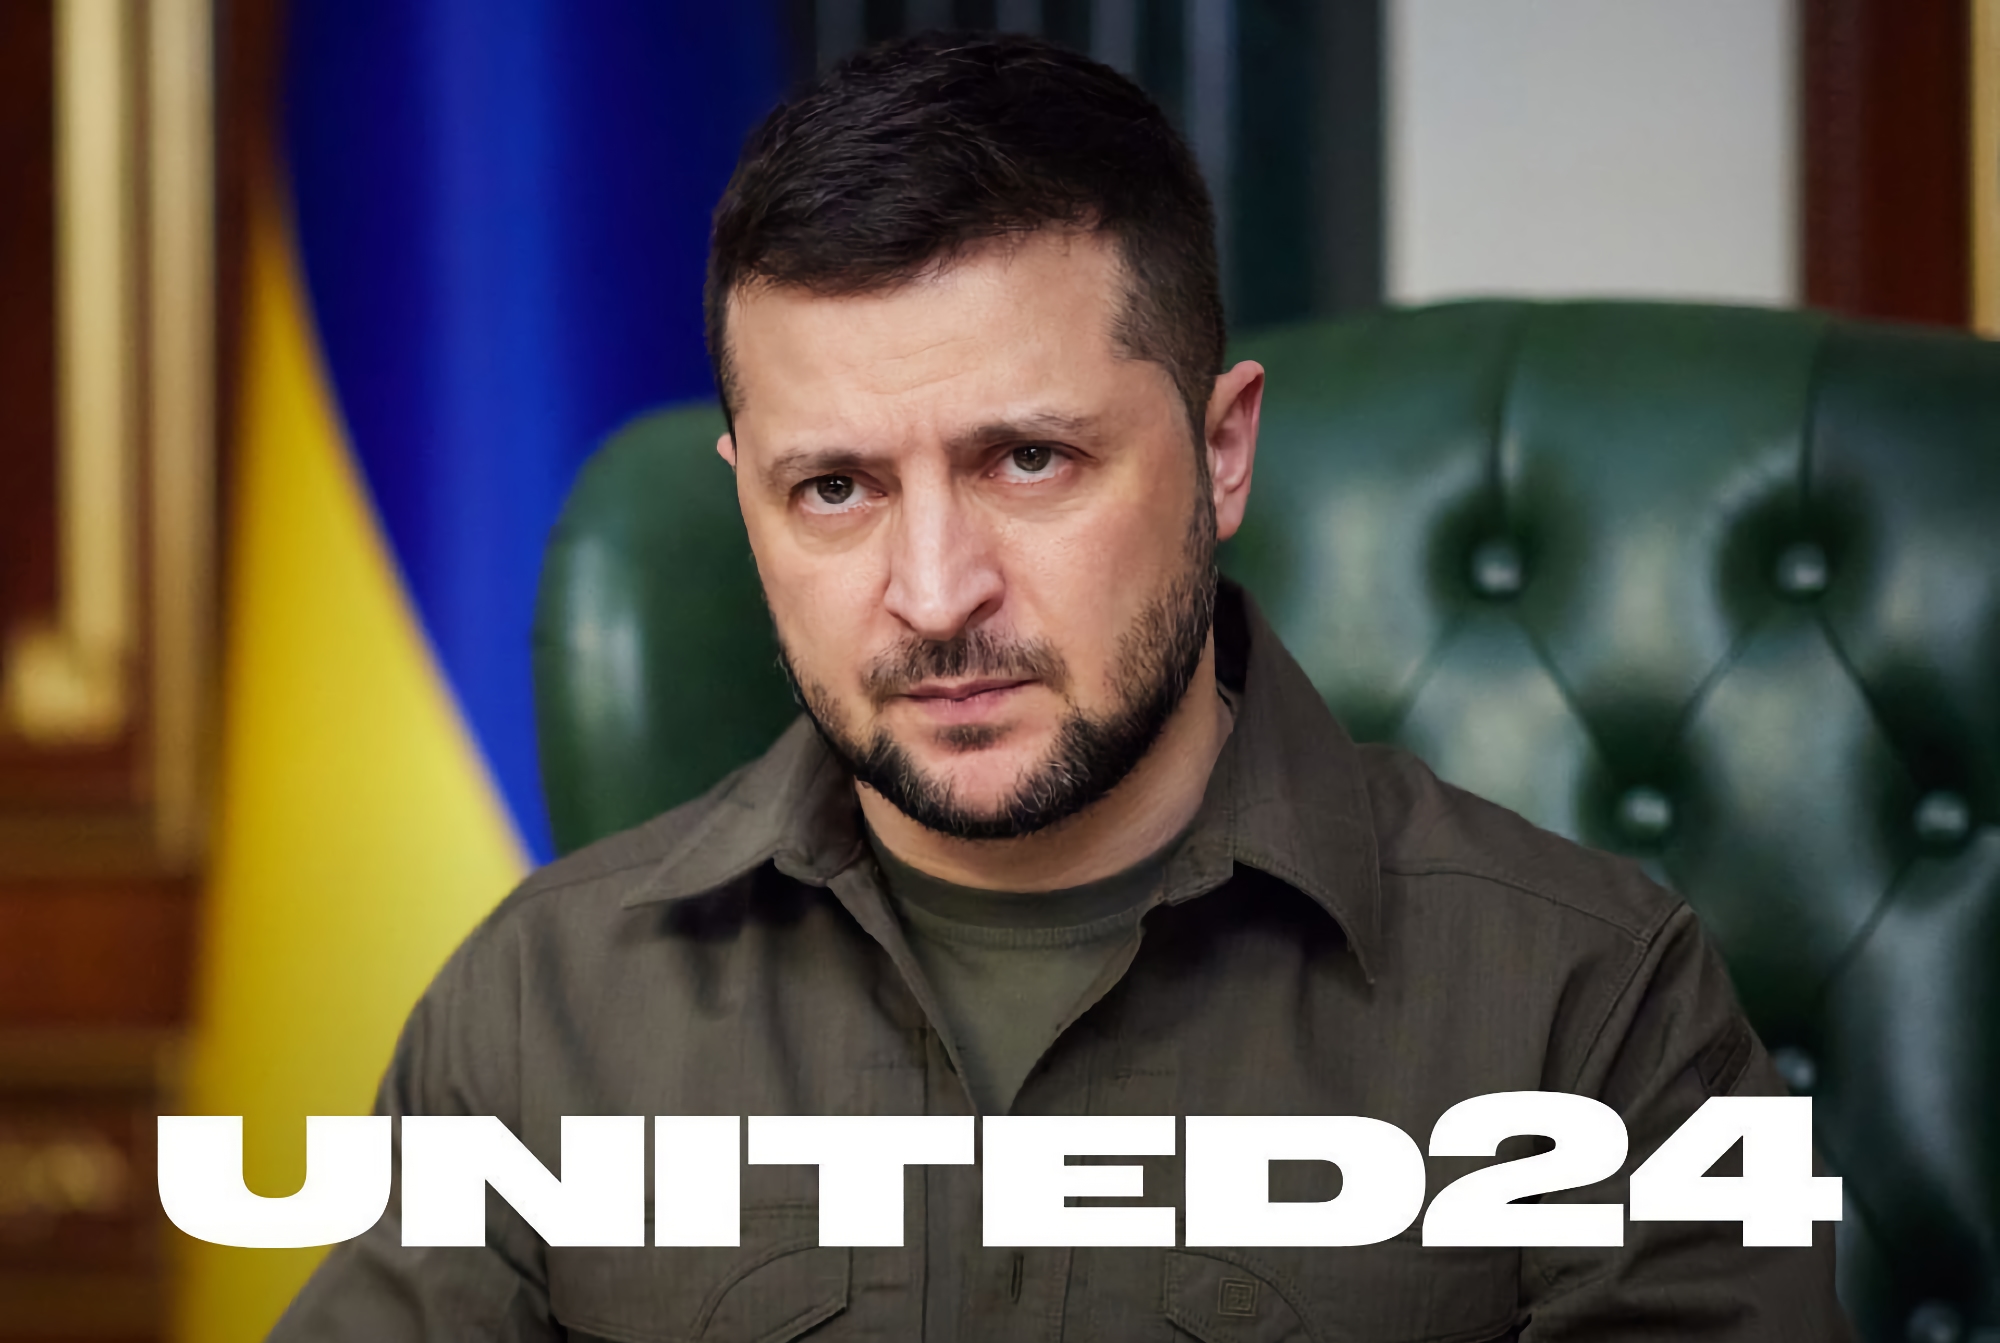 Володимир Зеленський анонсував United24: єдина платформа для збирання коштів на підтримку України